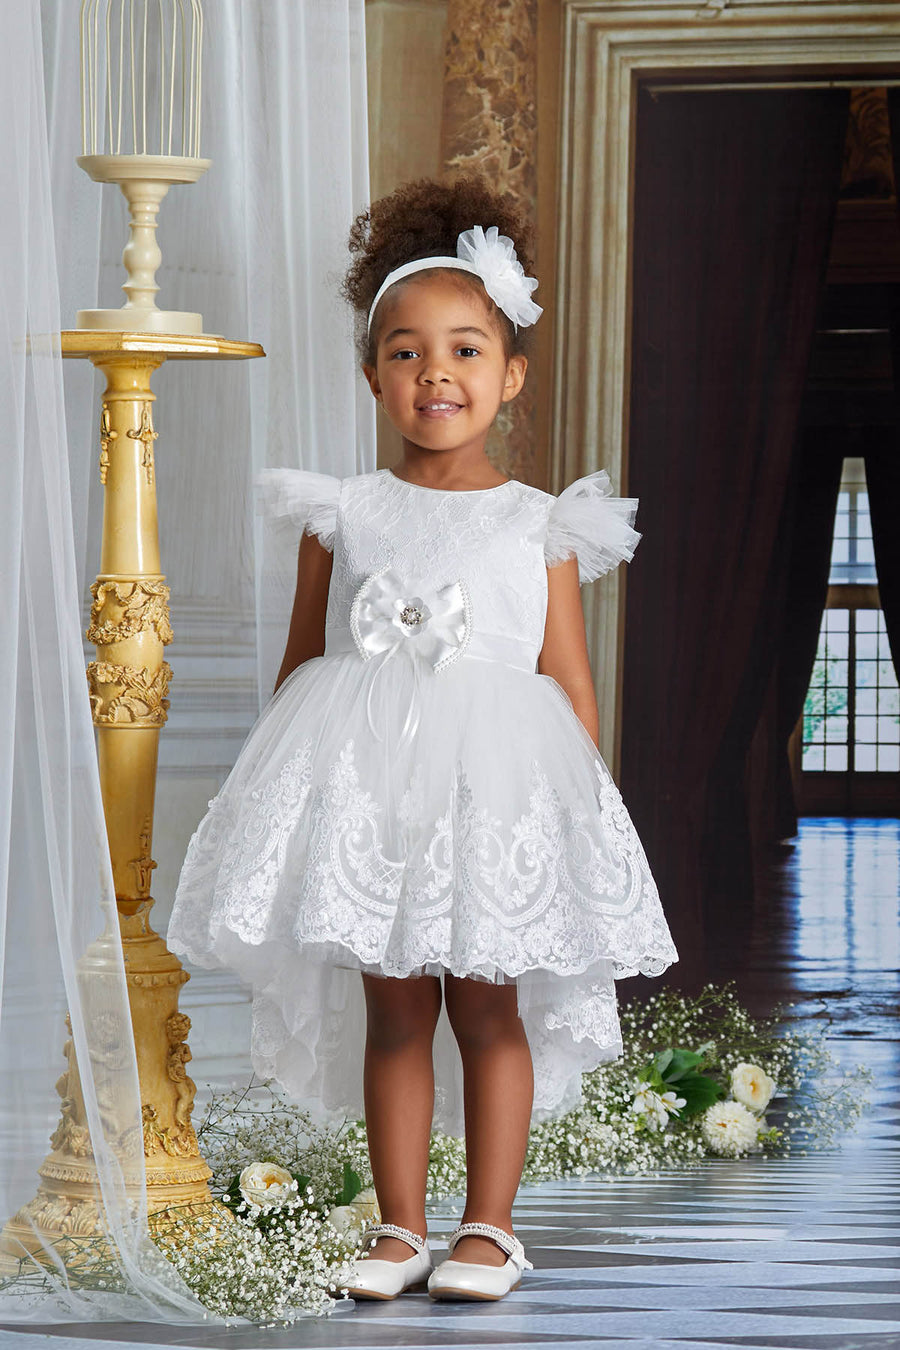 Lovely White Baby Dress